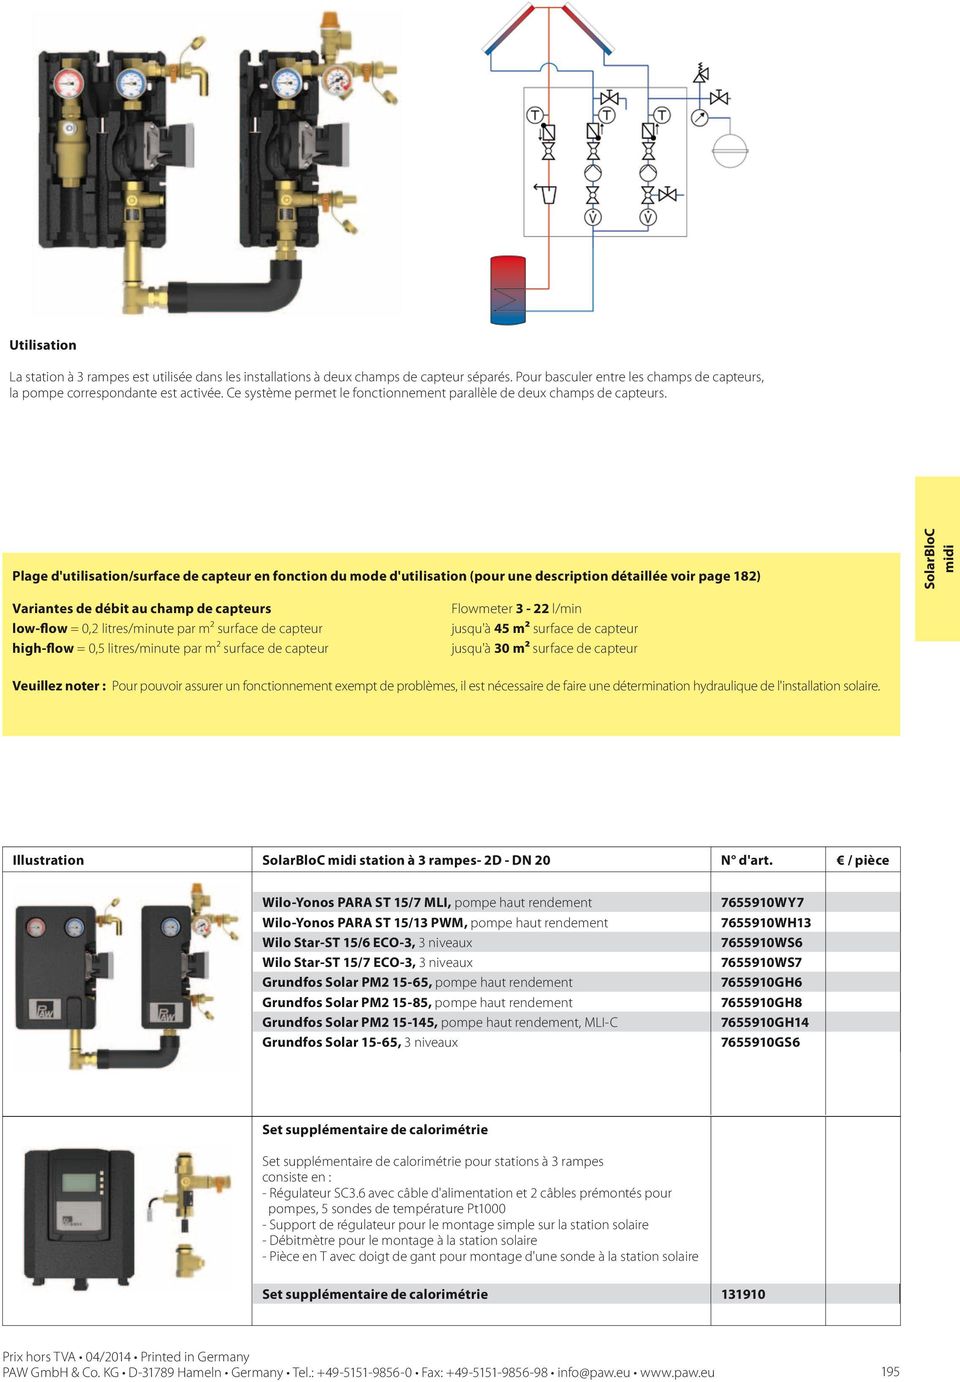 Plage d'utilisation/surface de capteur en fonction du mode d'utilisation (pour une description détaillée voir page 182) midi Variantes de débit au champ de capteurs Flowmeter 3-22 l/min low-flow =